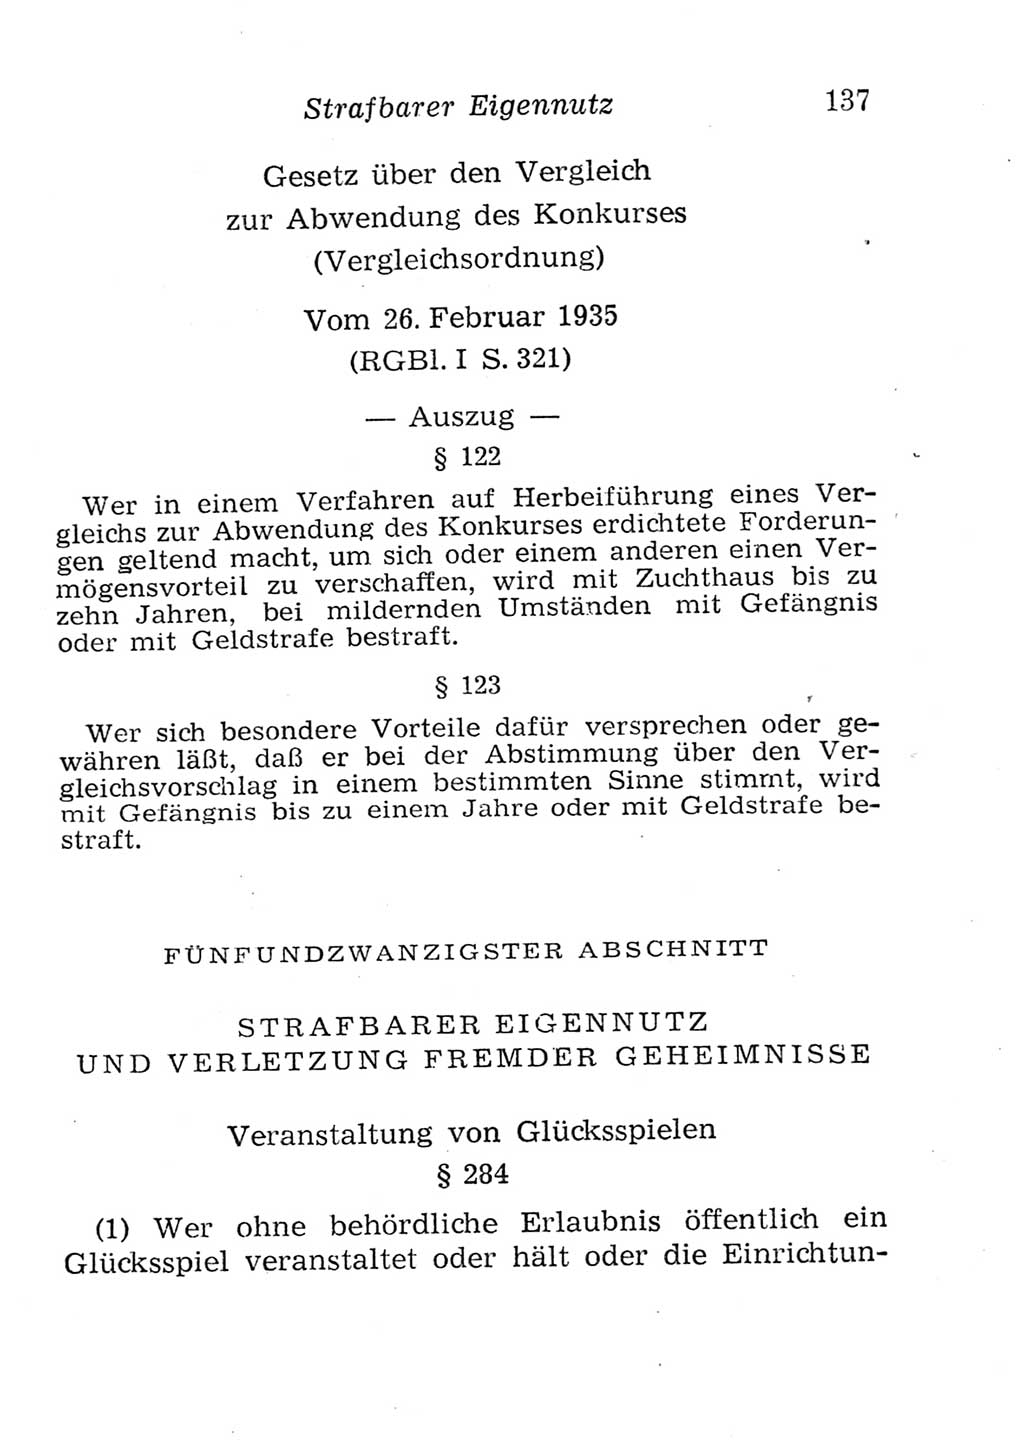 Strafgesetzbuch (StGB) und andere Strafgesetze [Deutsche Demokratische Republik (DDR)] 1957, Seite 137 (StGB Strafges. DDR 1957, S. 137)